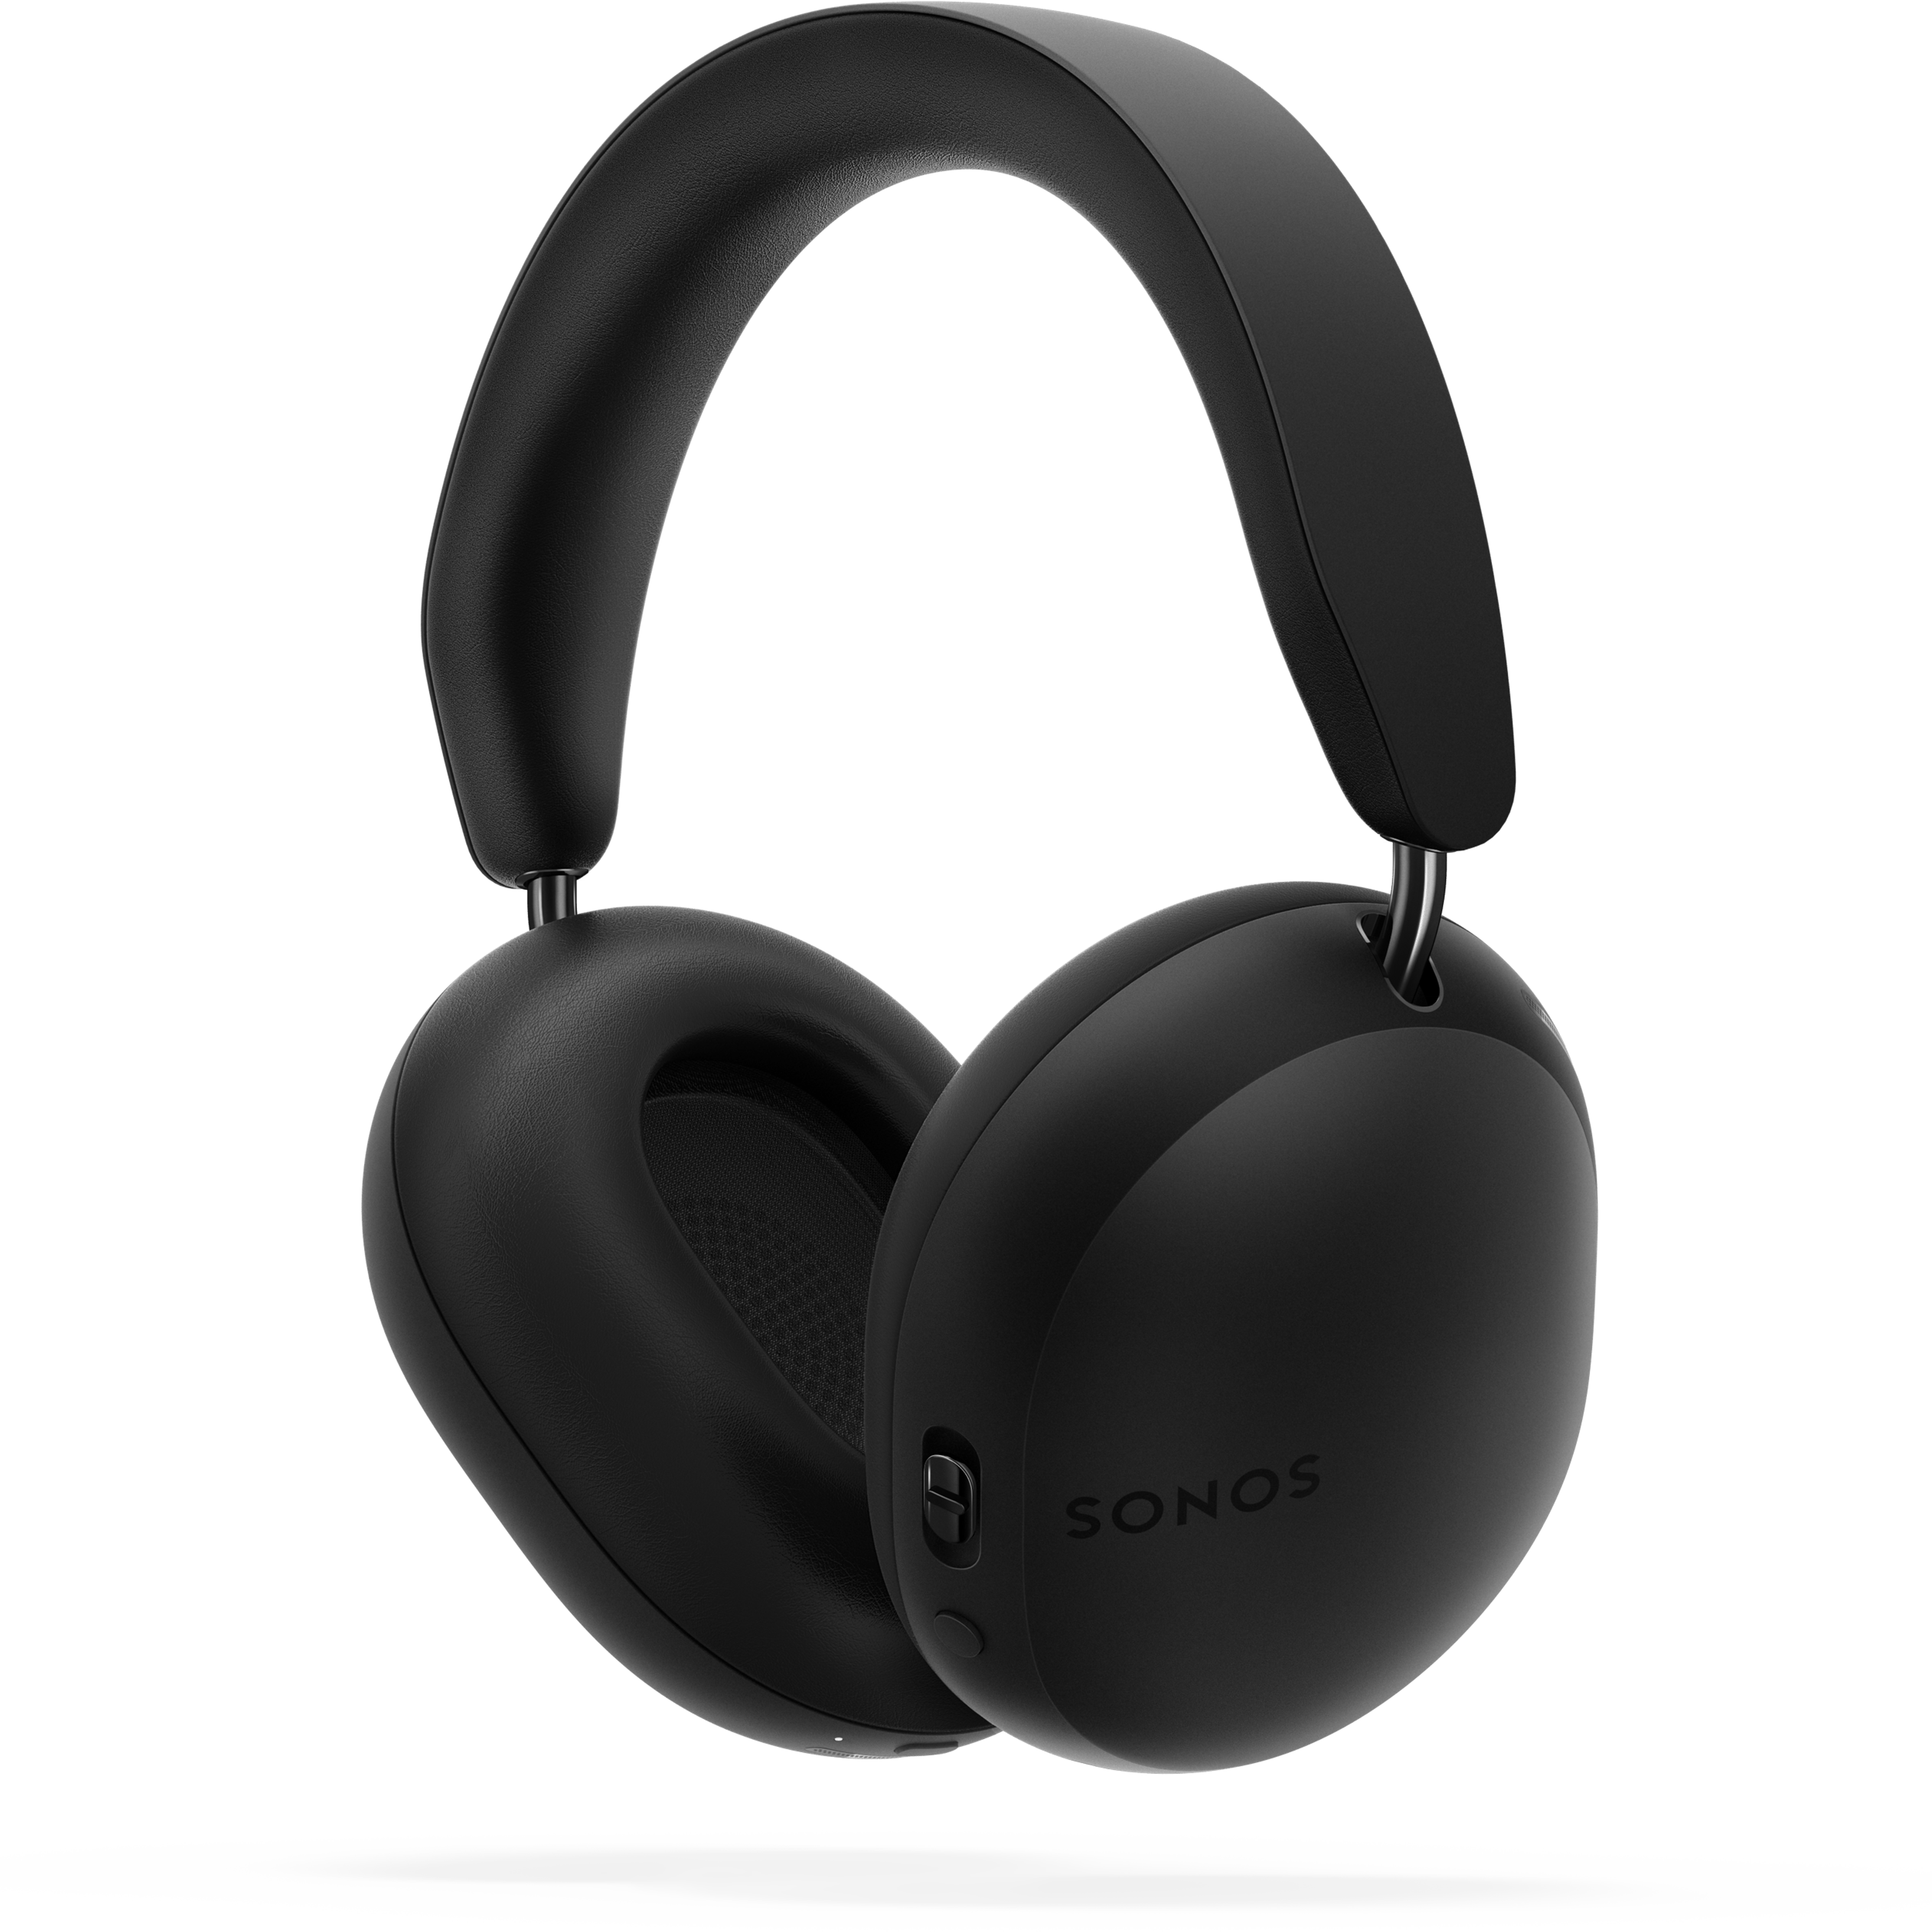 Sonos Ace koptelefoon in zwart, van achteren gezien, 45 graden gekanteld, boven schaduw